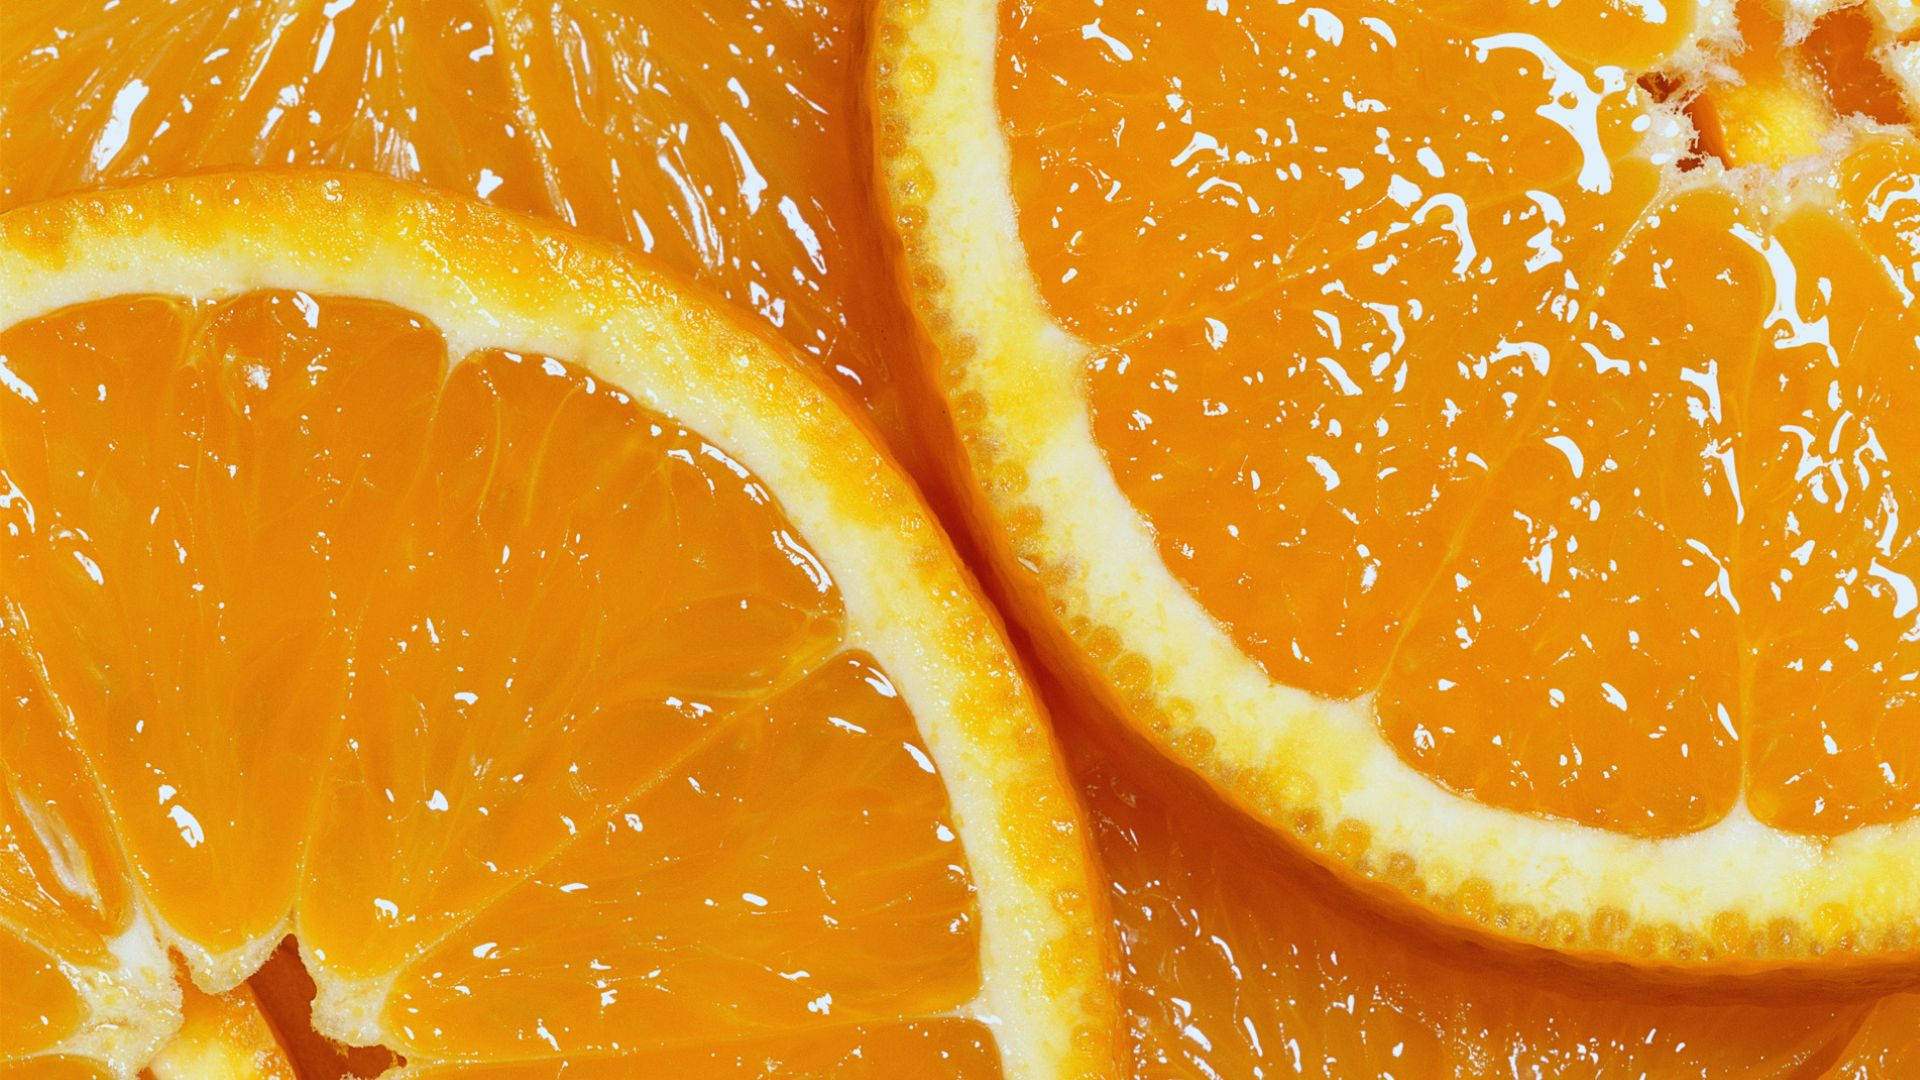 Invigorating Freshness: High-quality Image Of A Juicy Orange Fruit